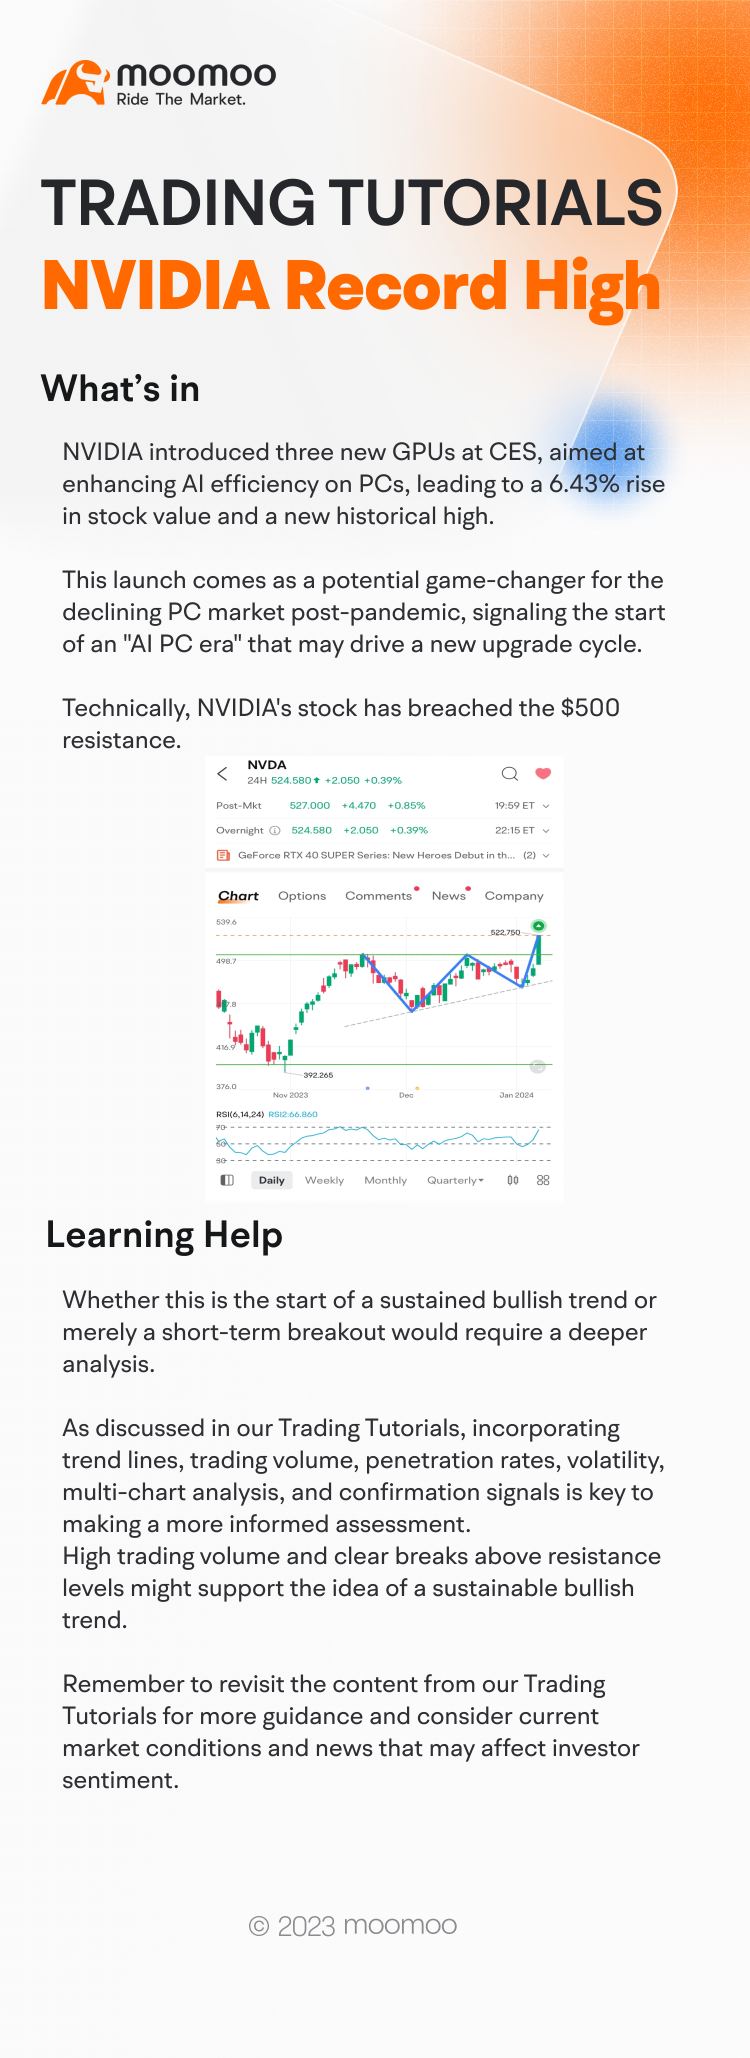 Where is NVIDIA's stock headed next?